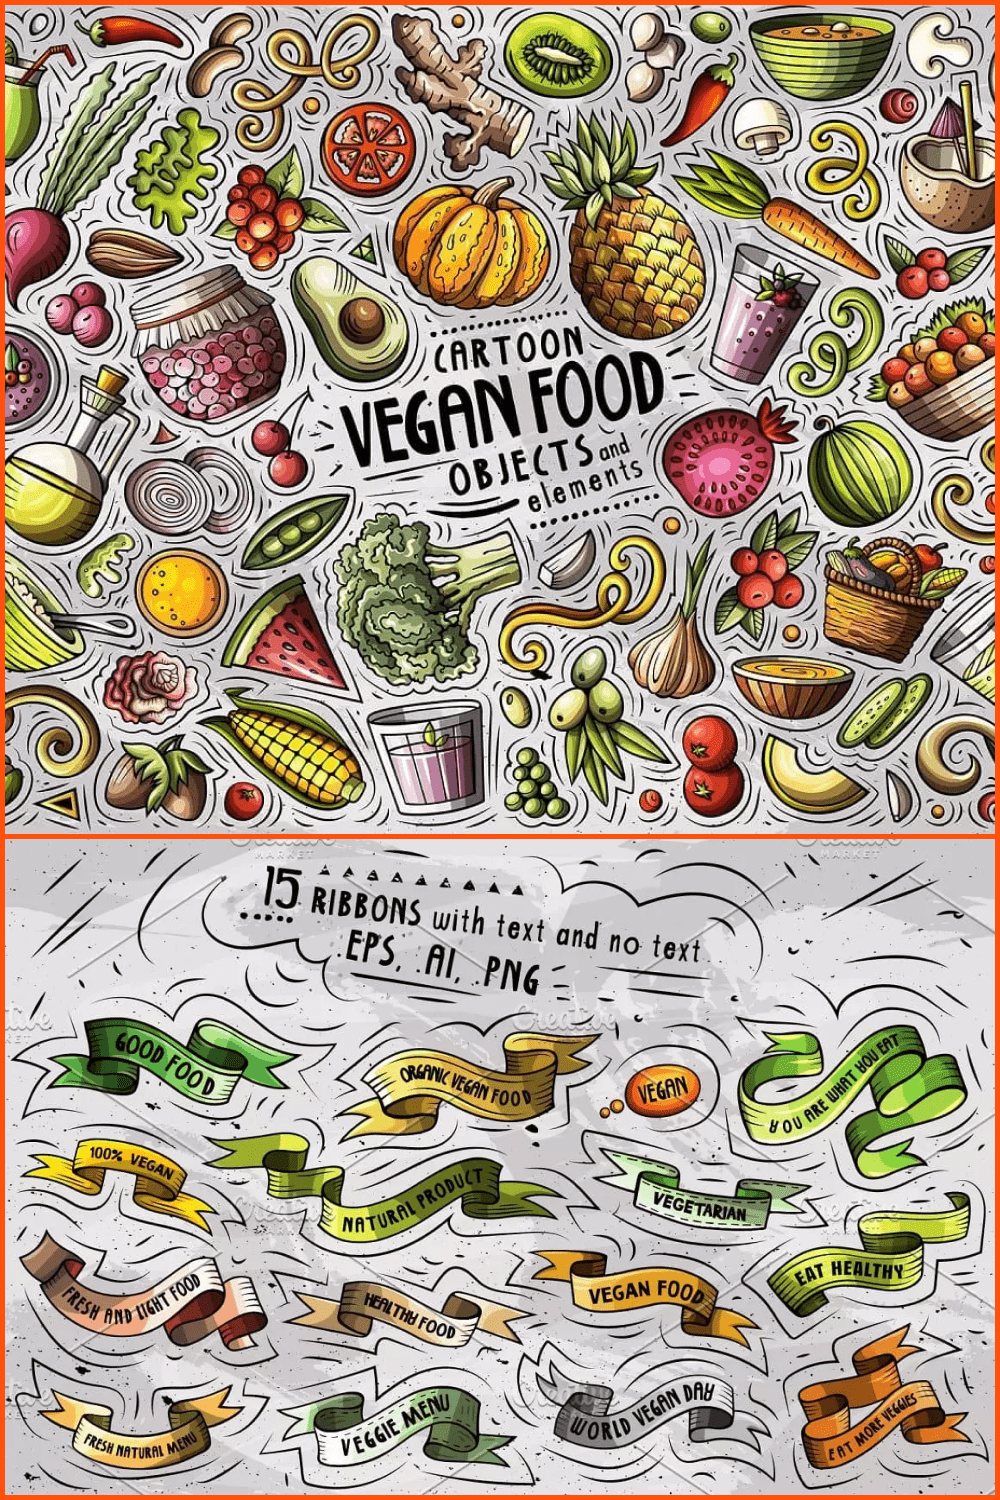 Cartoon vegan food and signs.